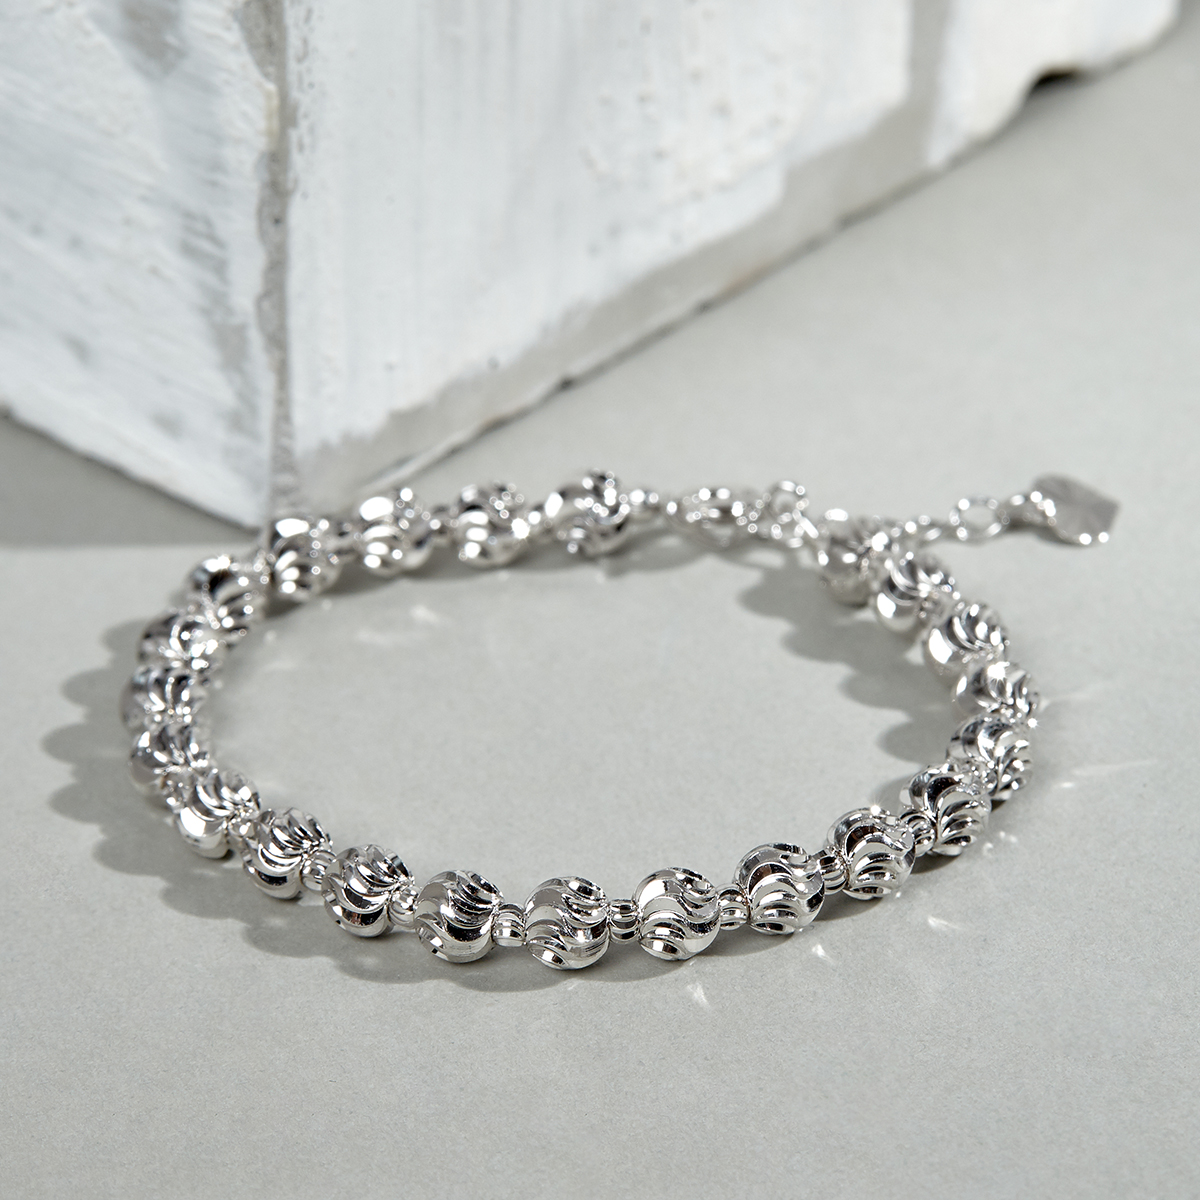 Với vẻ đẹp hiện đại và tinh tế, vòng tay nữ bạc JK Silver kiểu dáng quả trám mạ bạch kim chắc chắn sẽ là món phụ kiện ưu tiên của chị em. Được cập nhật theo xu hướng mới nhất, sản phẩm tạo điểm nhấn đầy ấn tượng cho mỗi set trang phục.